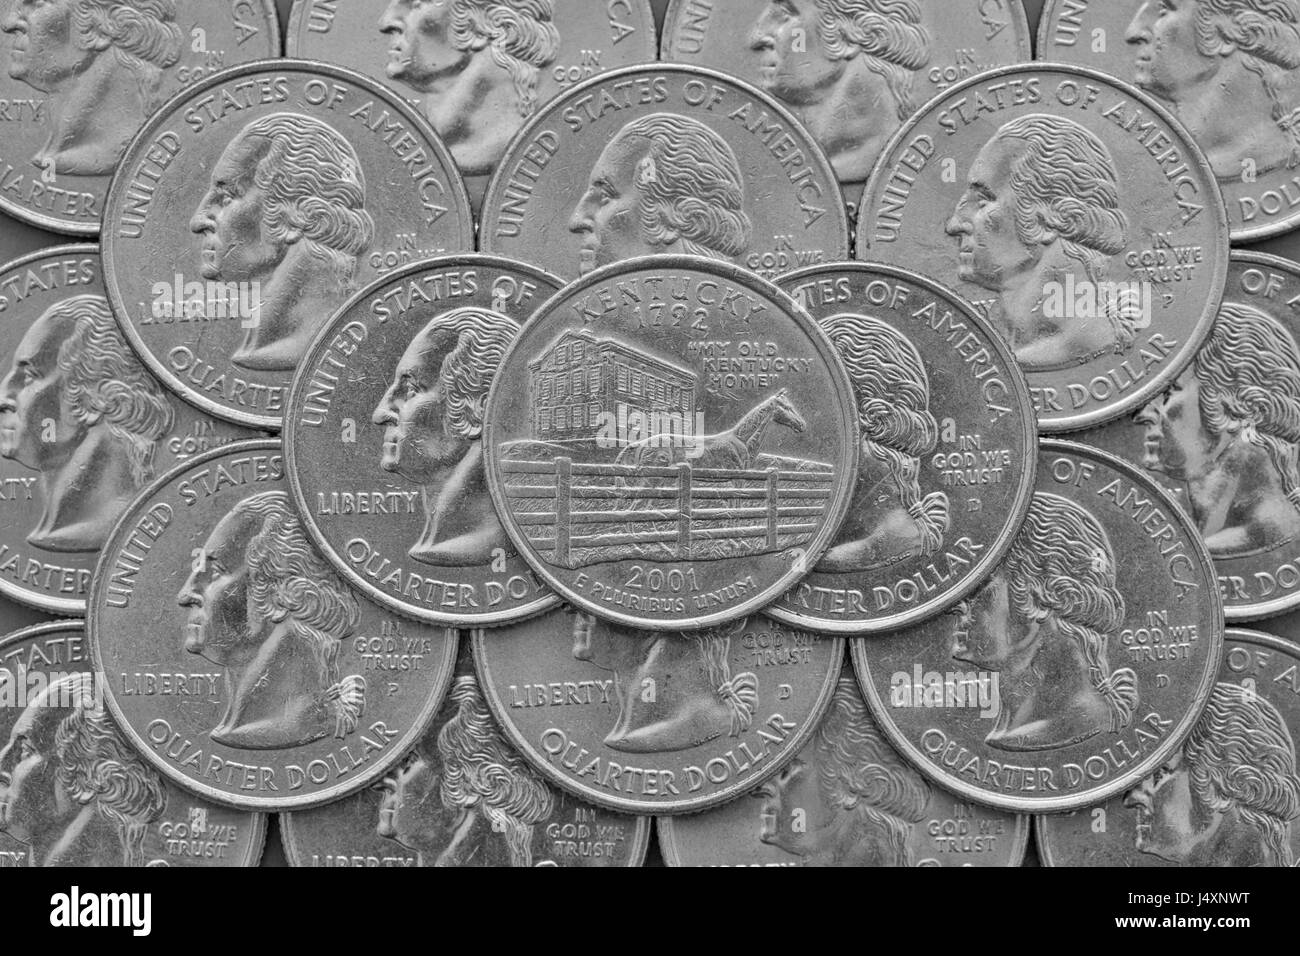 Stato del Kentucky e monete di Stati Uniti d'America. Pila di noi trimestre monete con George Washington e sulla parte superiore di un quarto di Stato del Kentucky. Foto Stock